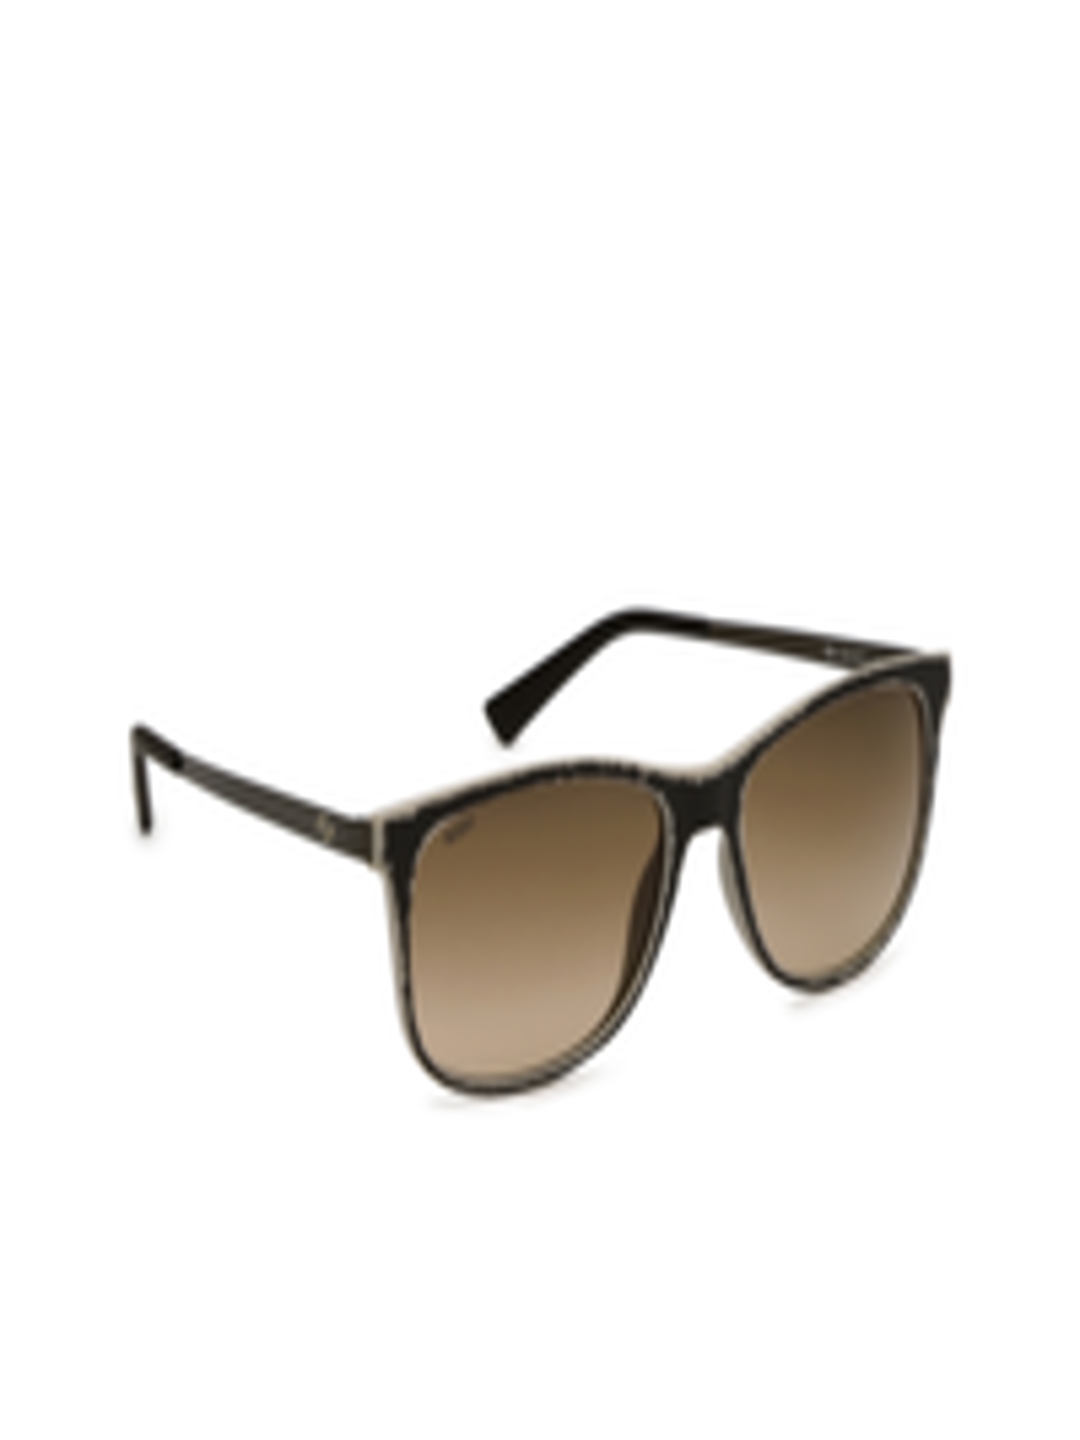 Buy SCOTT Women Wayfarer Sunglasses 2871 C2 S - Sunglasses for Women ...